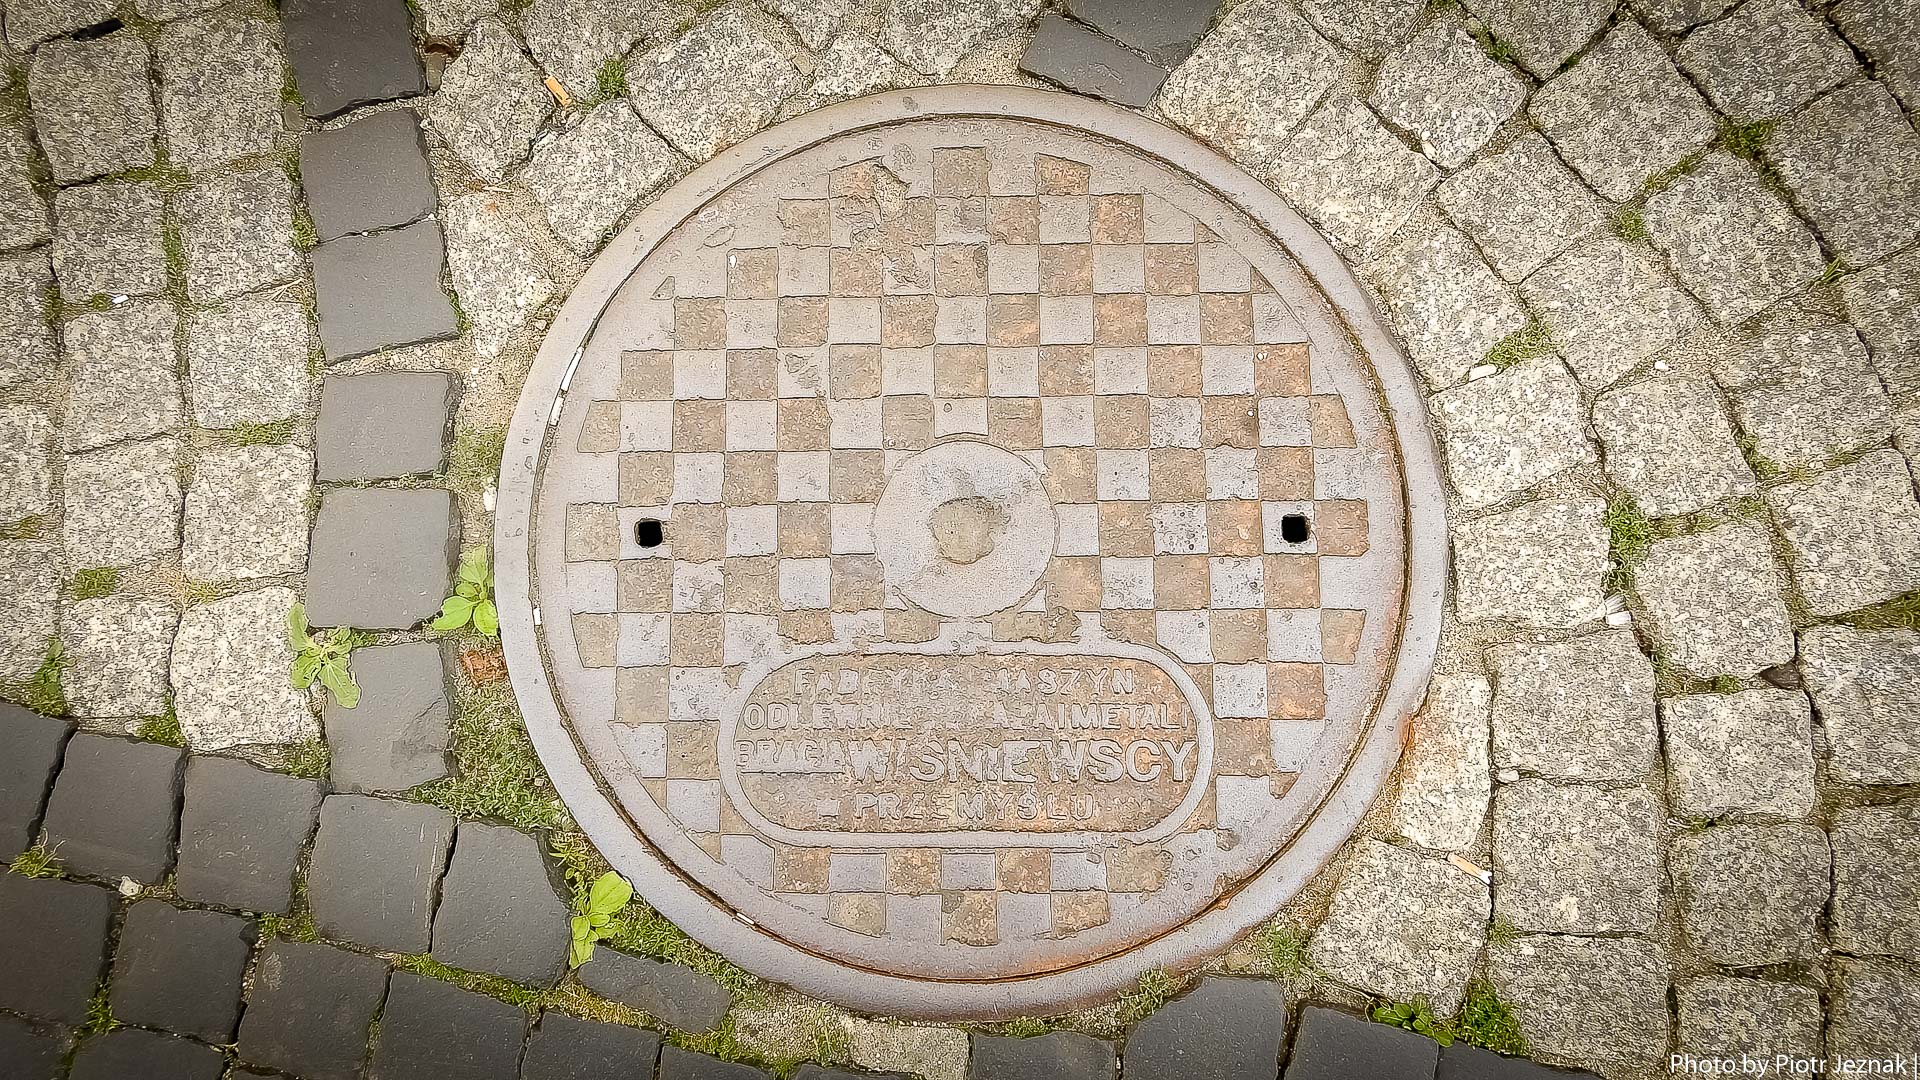 Manhole cover - Fabryka maszyn, odlewnie zelaza i metali braci Wisniewskich w Przemyslu